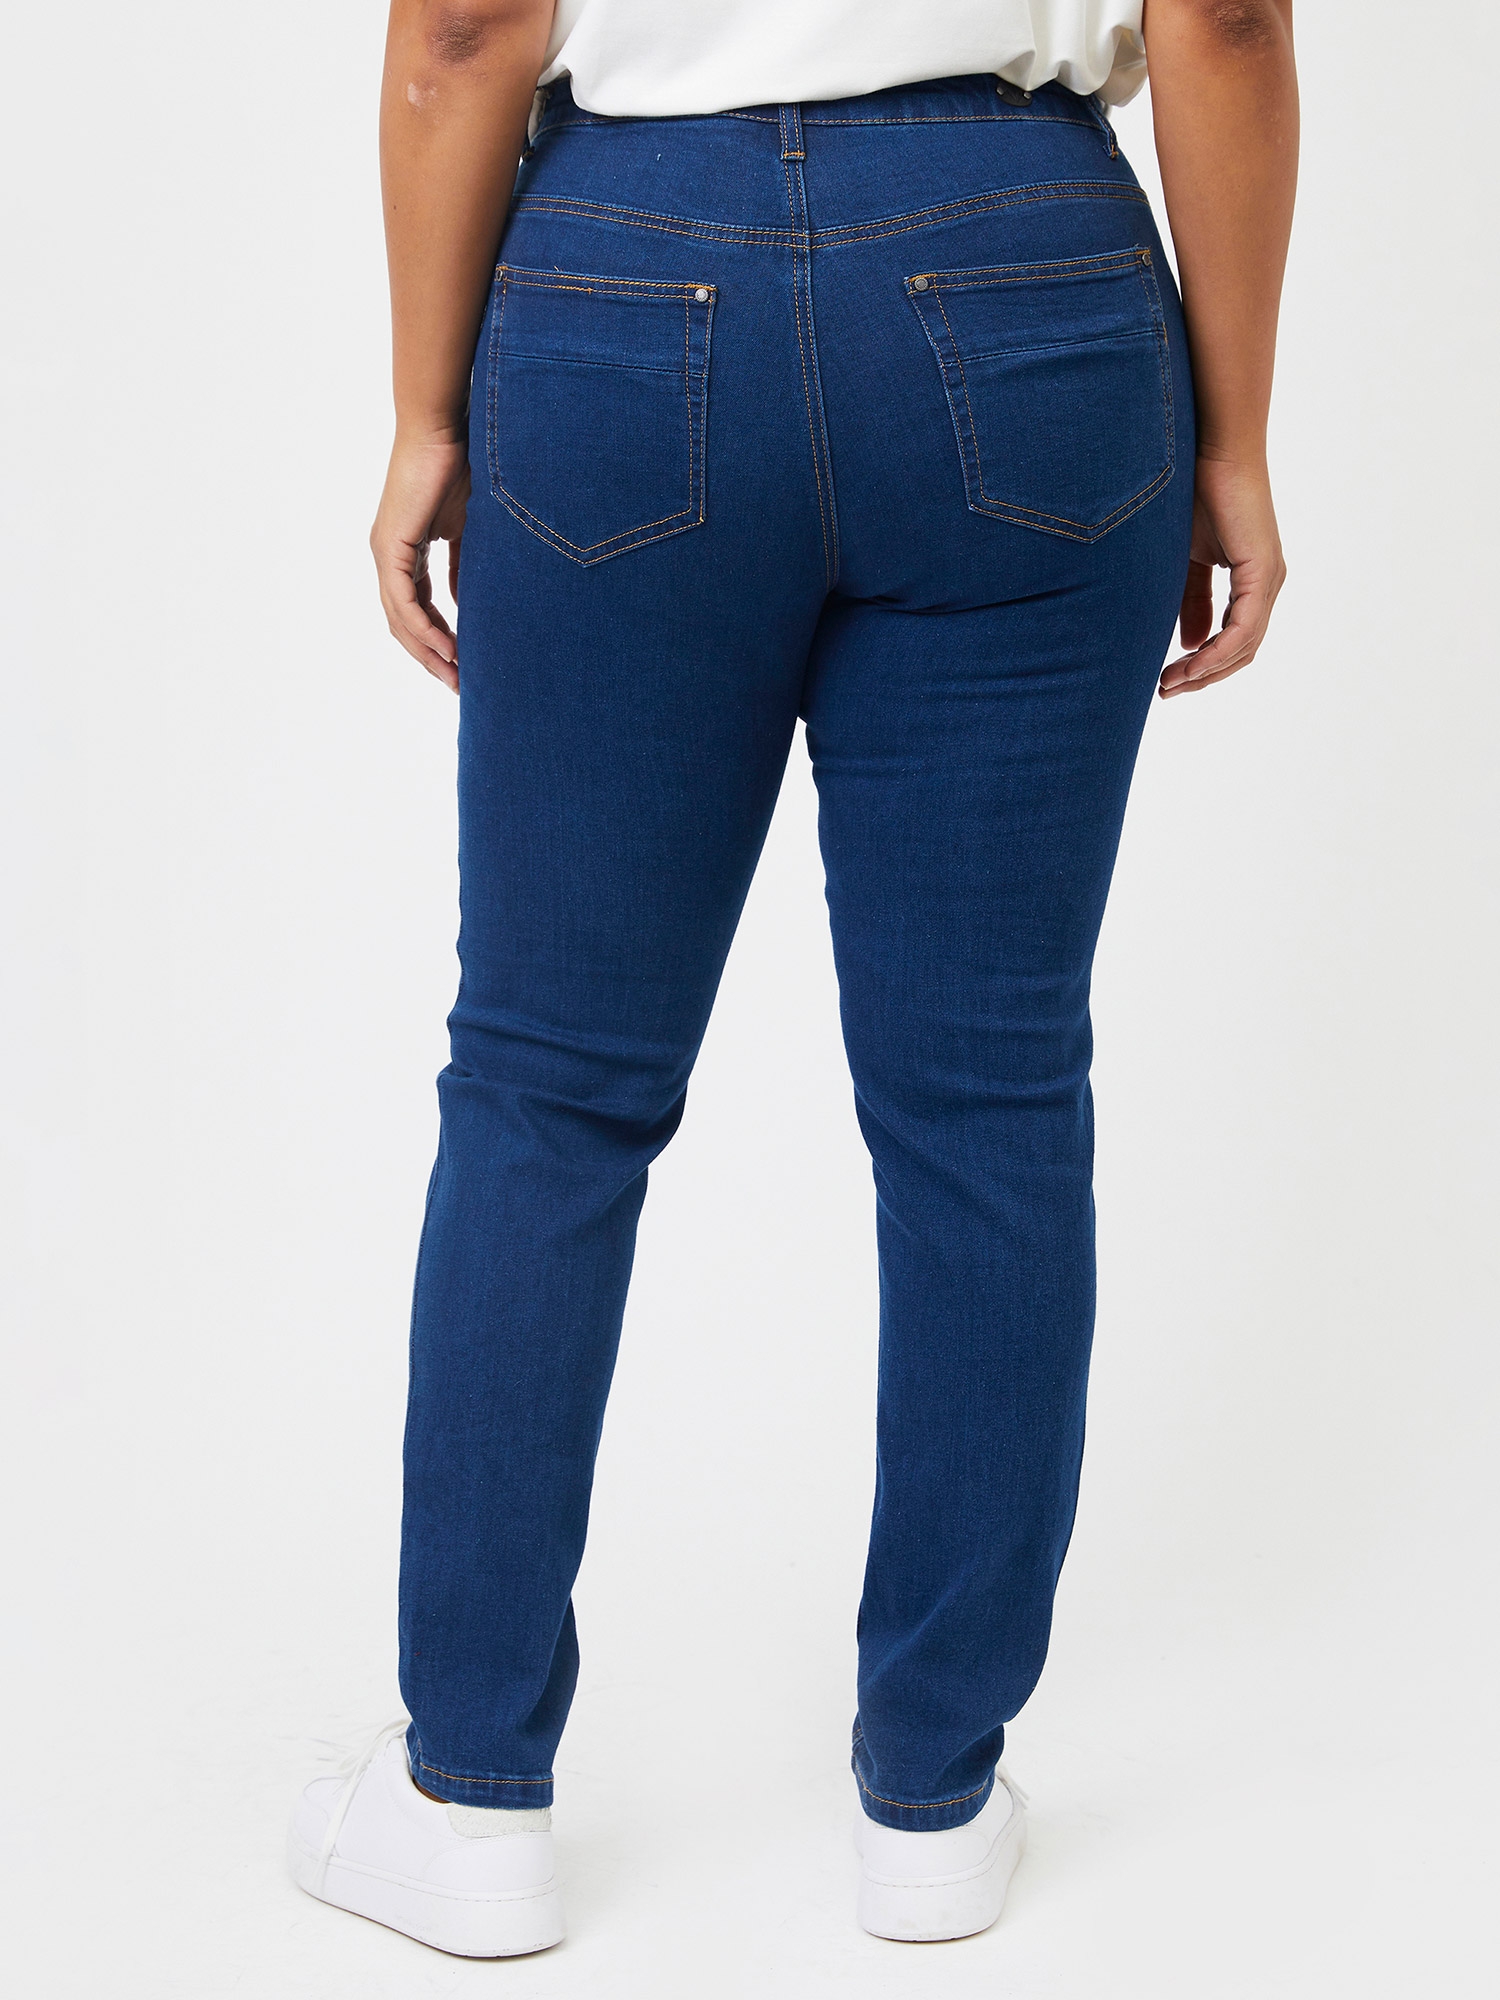 MILAN - Blå strækbar jeans fra Adia